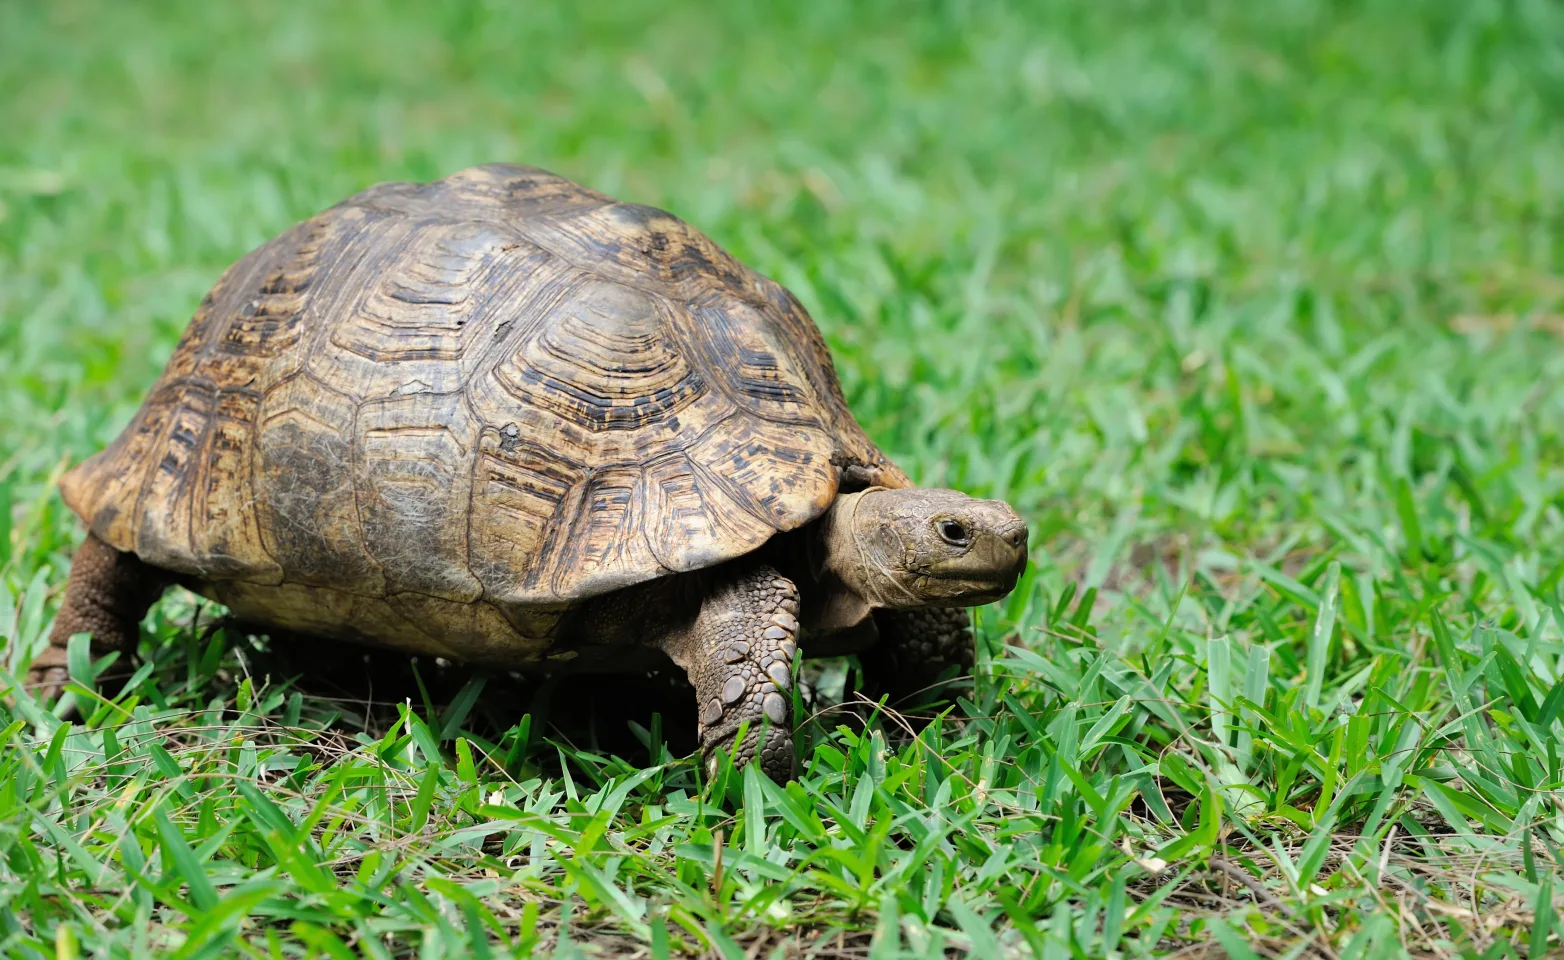 Turtle walking in grass